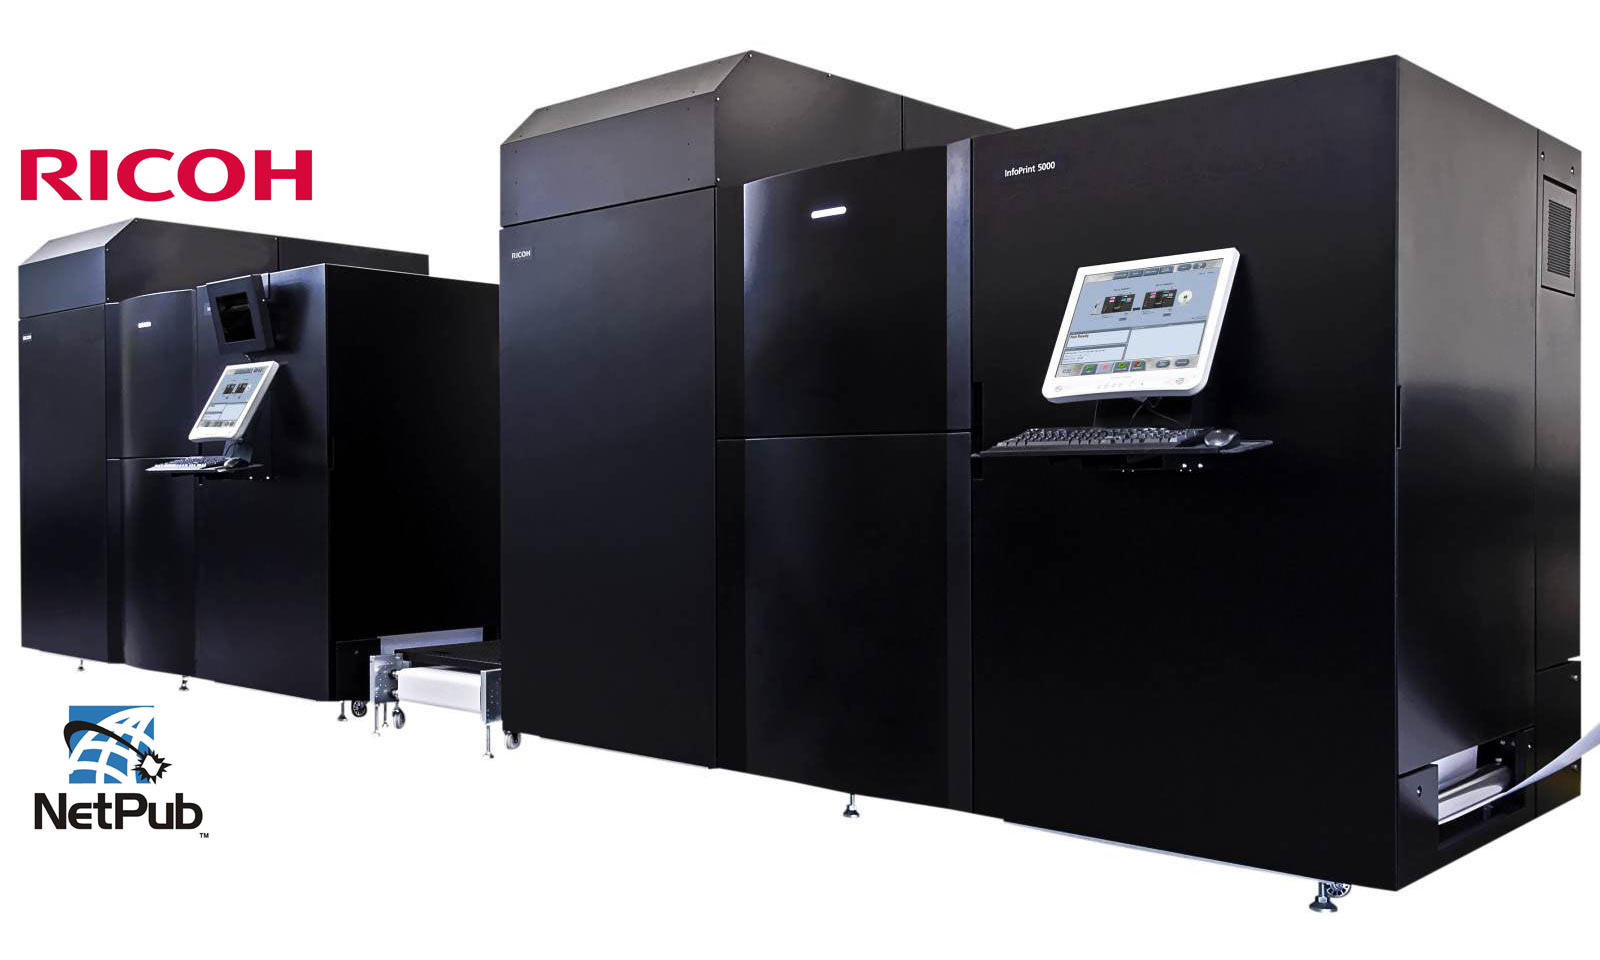 Известная американская цифровая типография «MCA NetPub» объявила о вводе в эксплуатацию у себя новейшей рулонной цветной цифровой печатной машины Ricoh IP5000